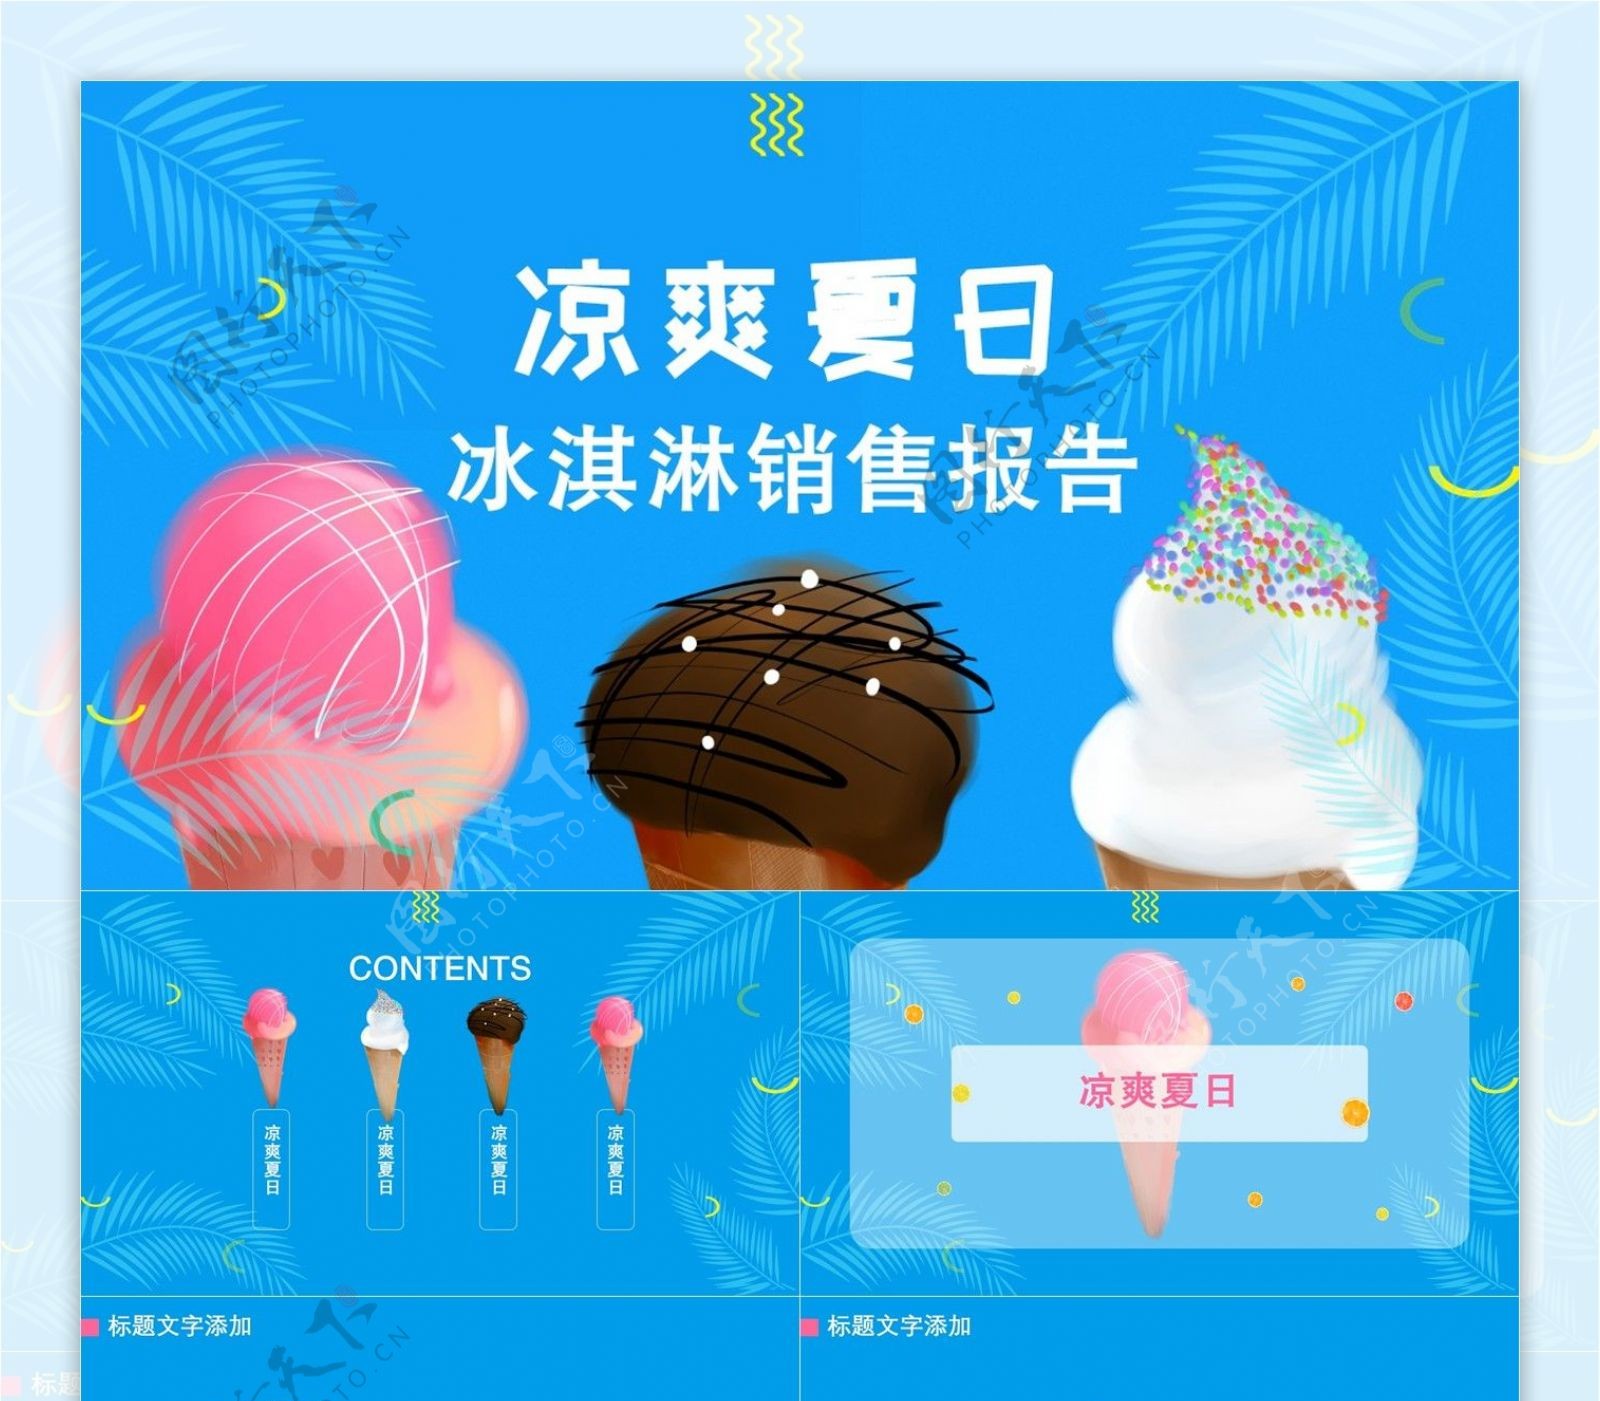 421凉爽夏日冰淇淋销售报告PPT模板